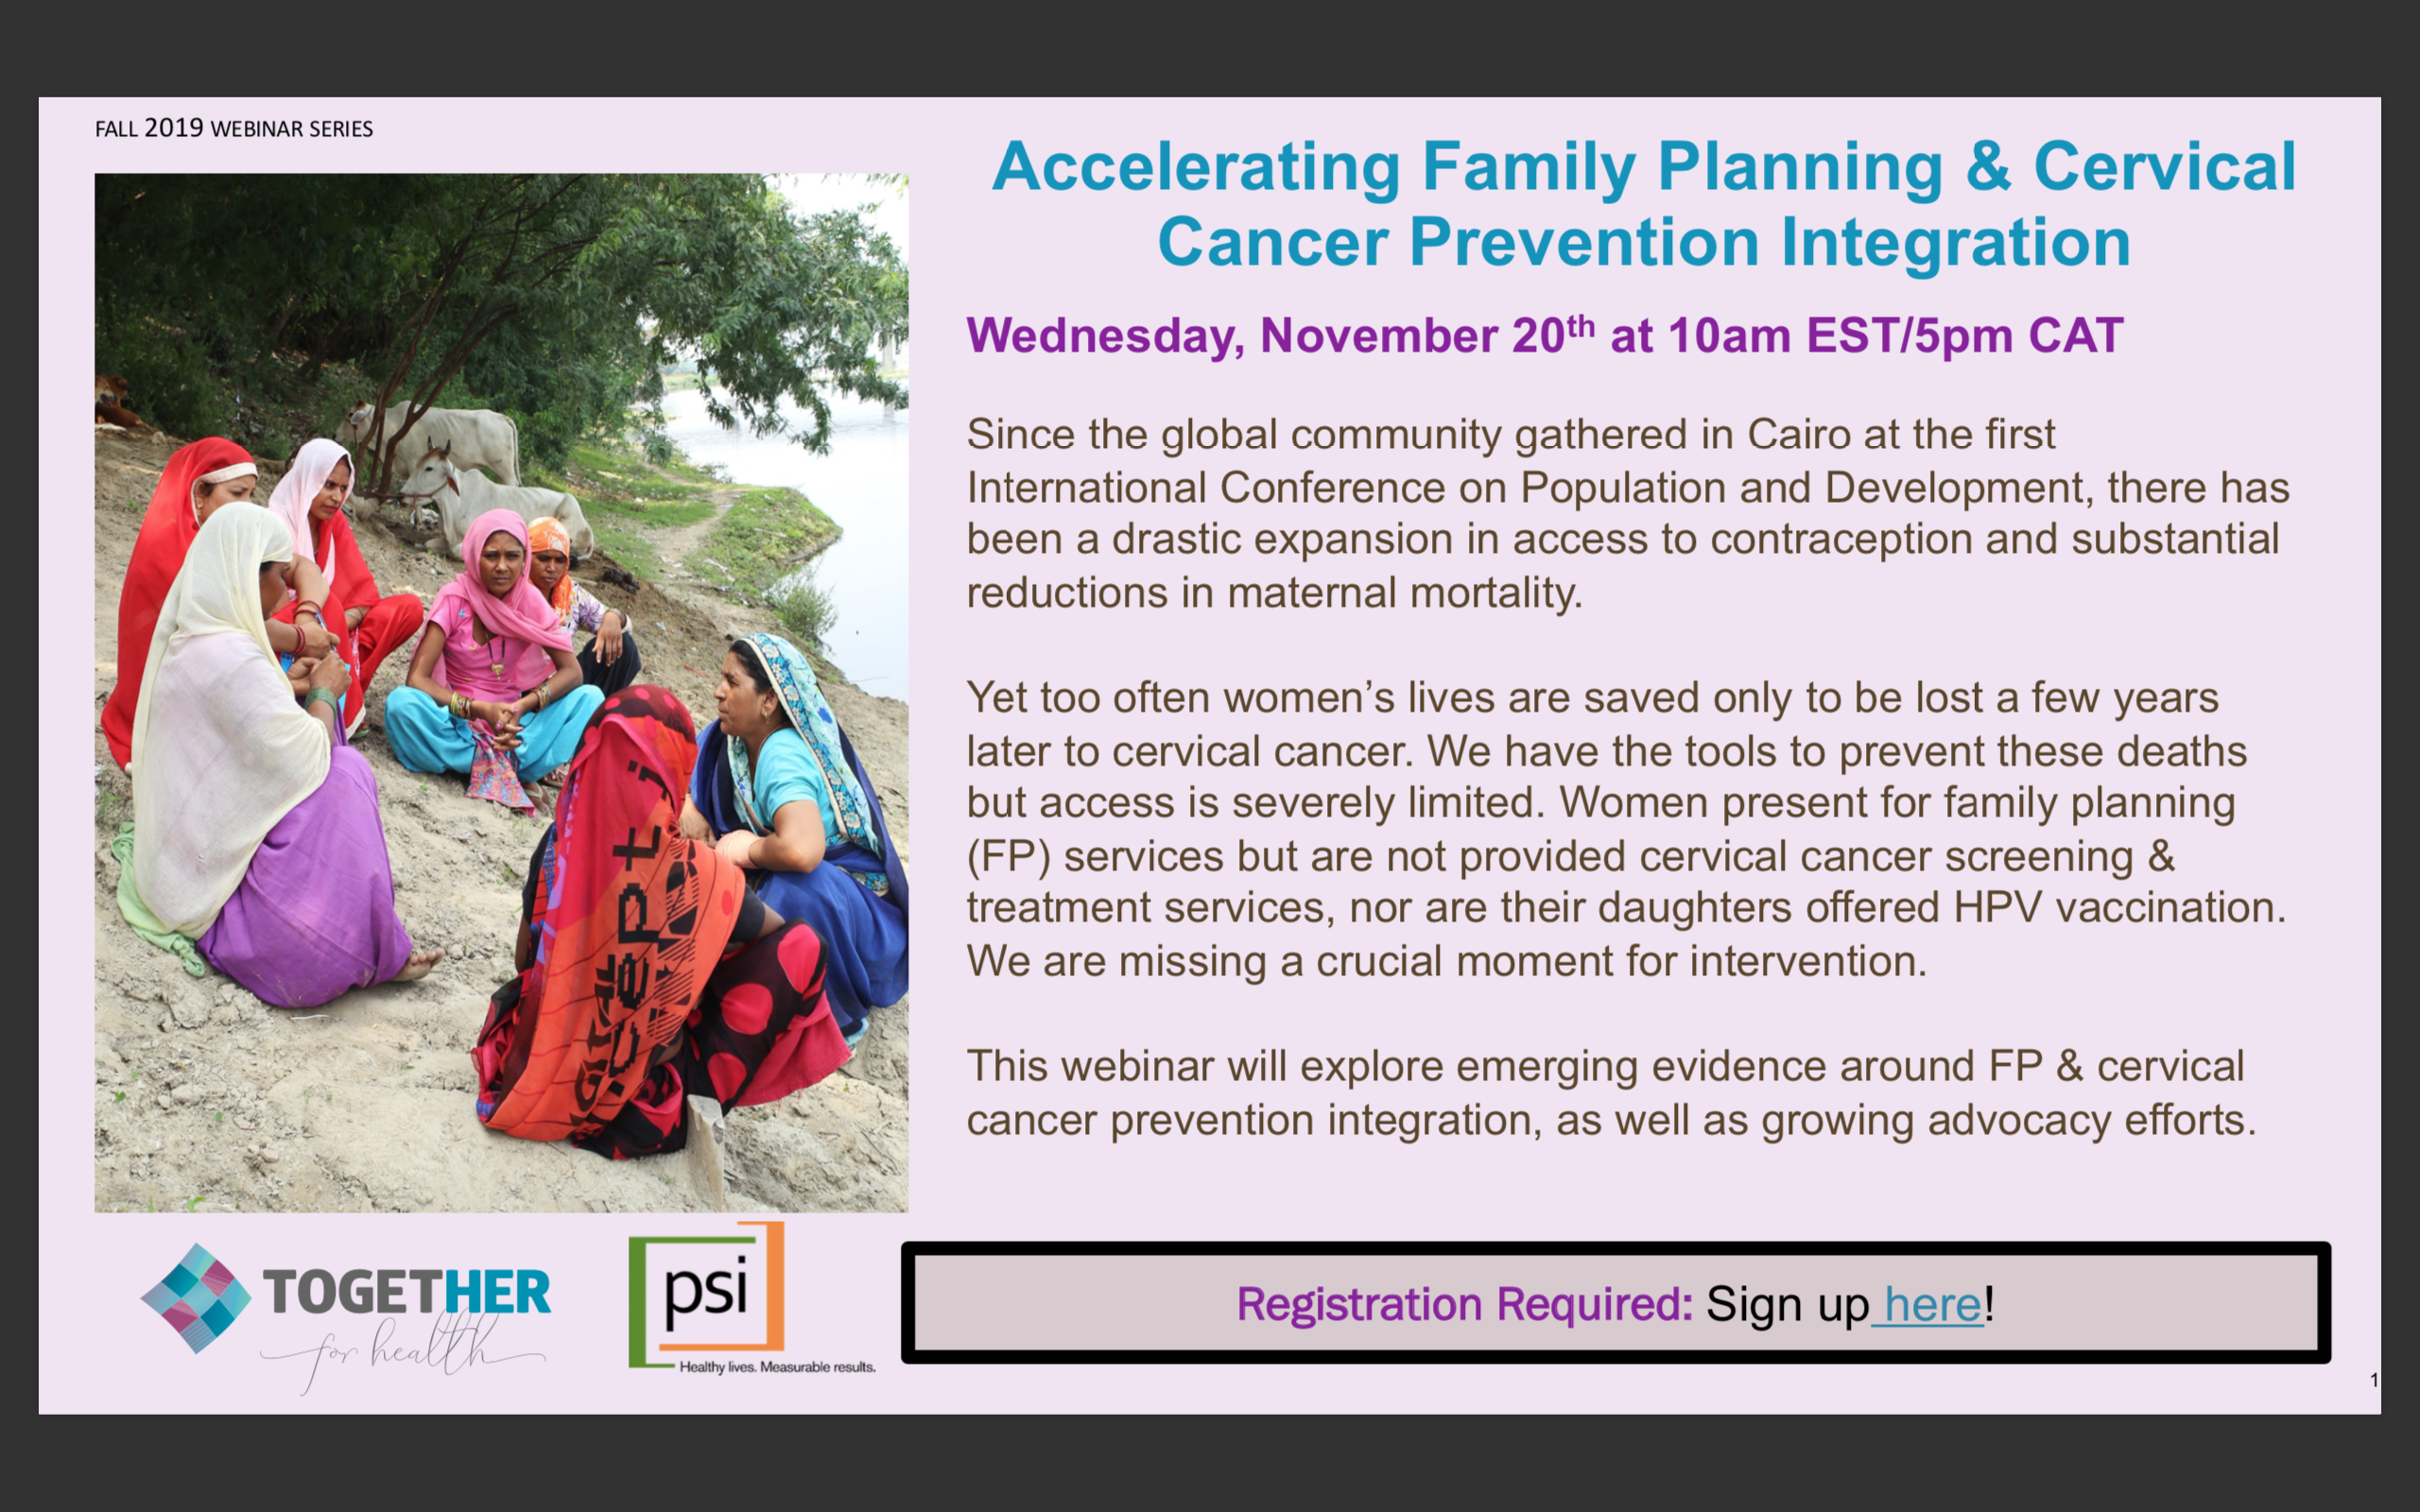 Invitation to FP/Cervical Cancer integration webinar